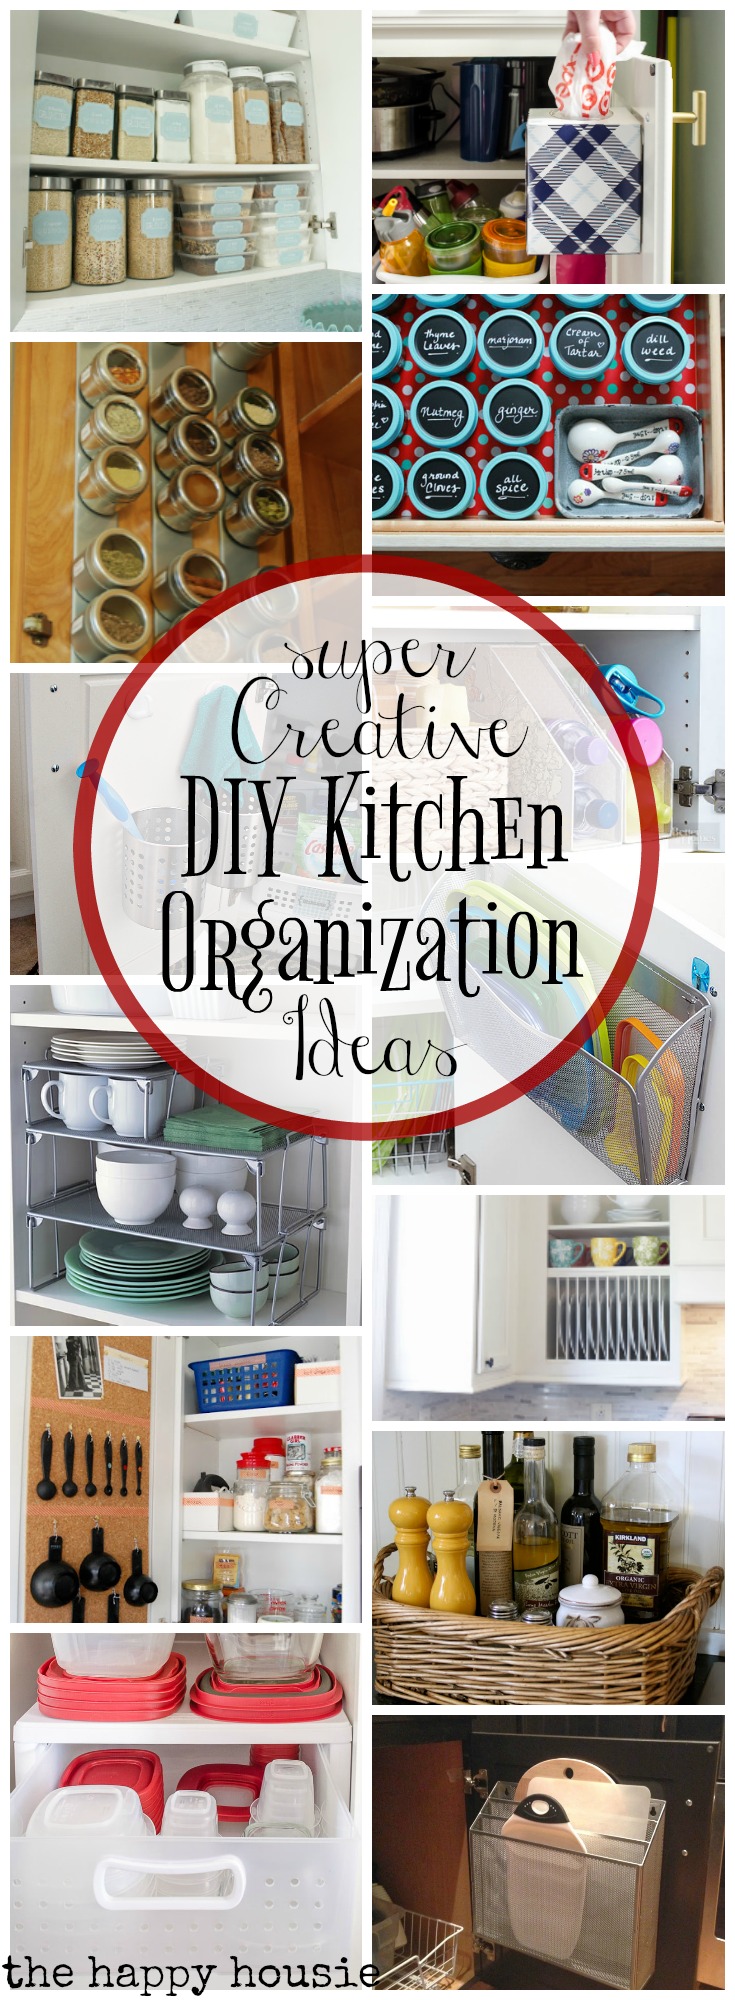 DIY Kitchen Organization Ideas poster.